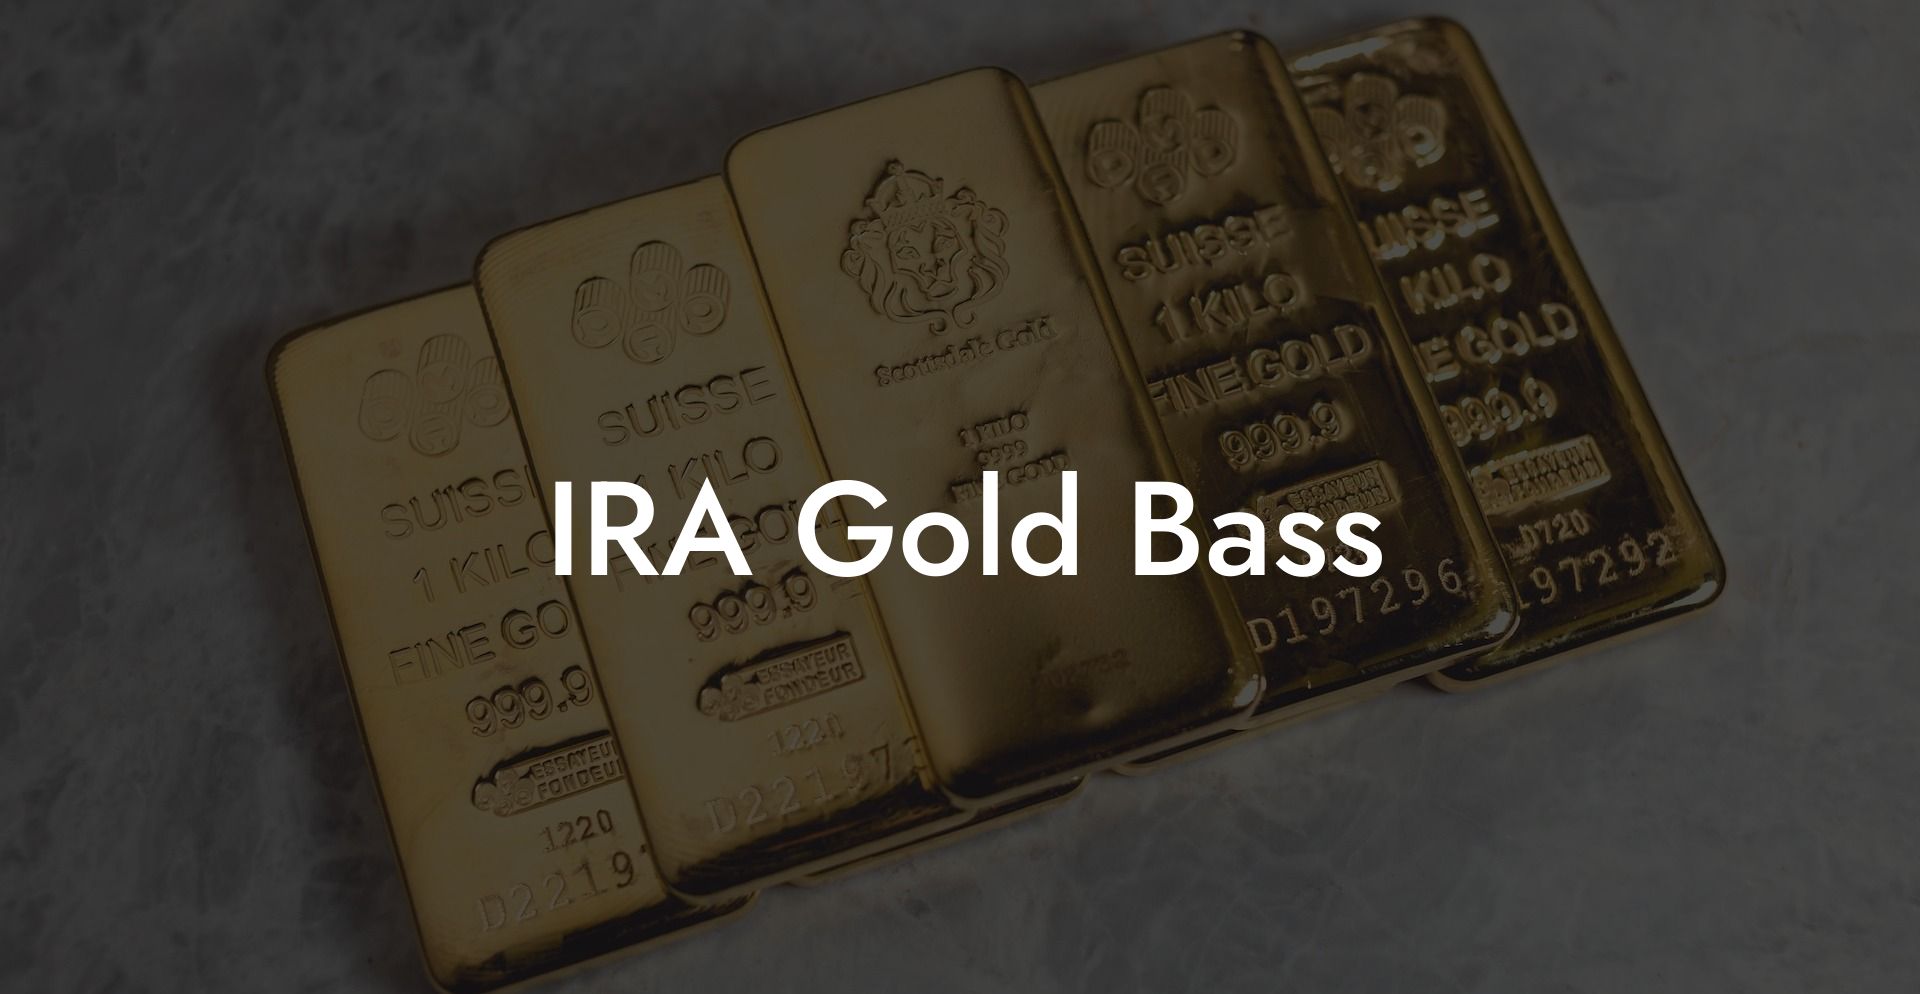 IRA Gold Bass